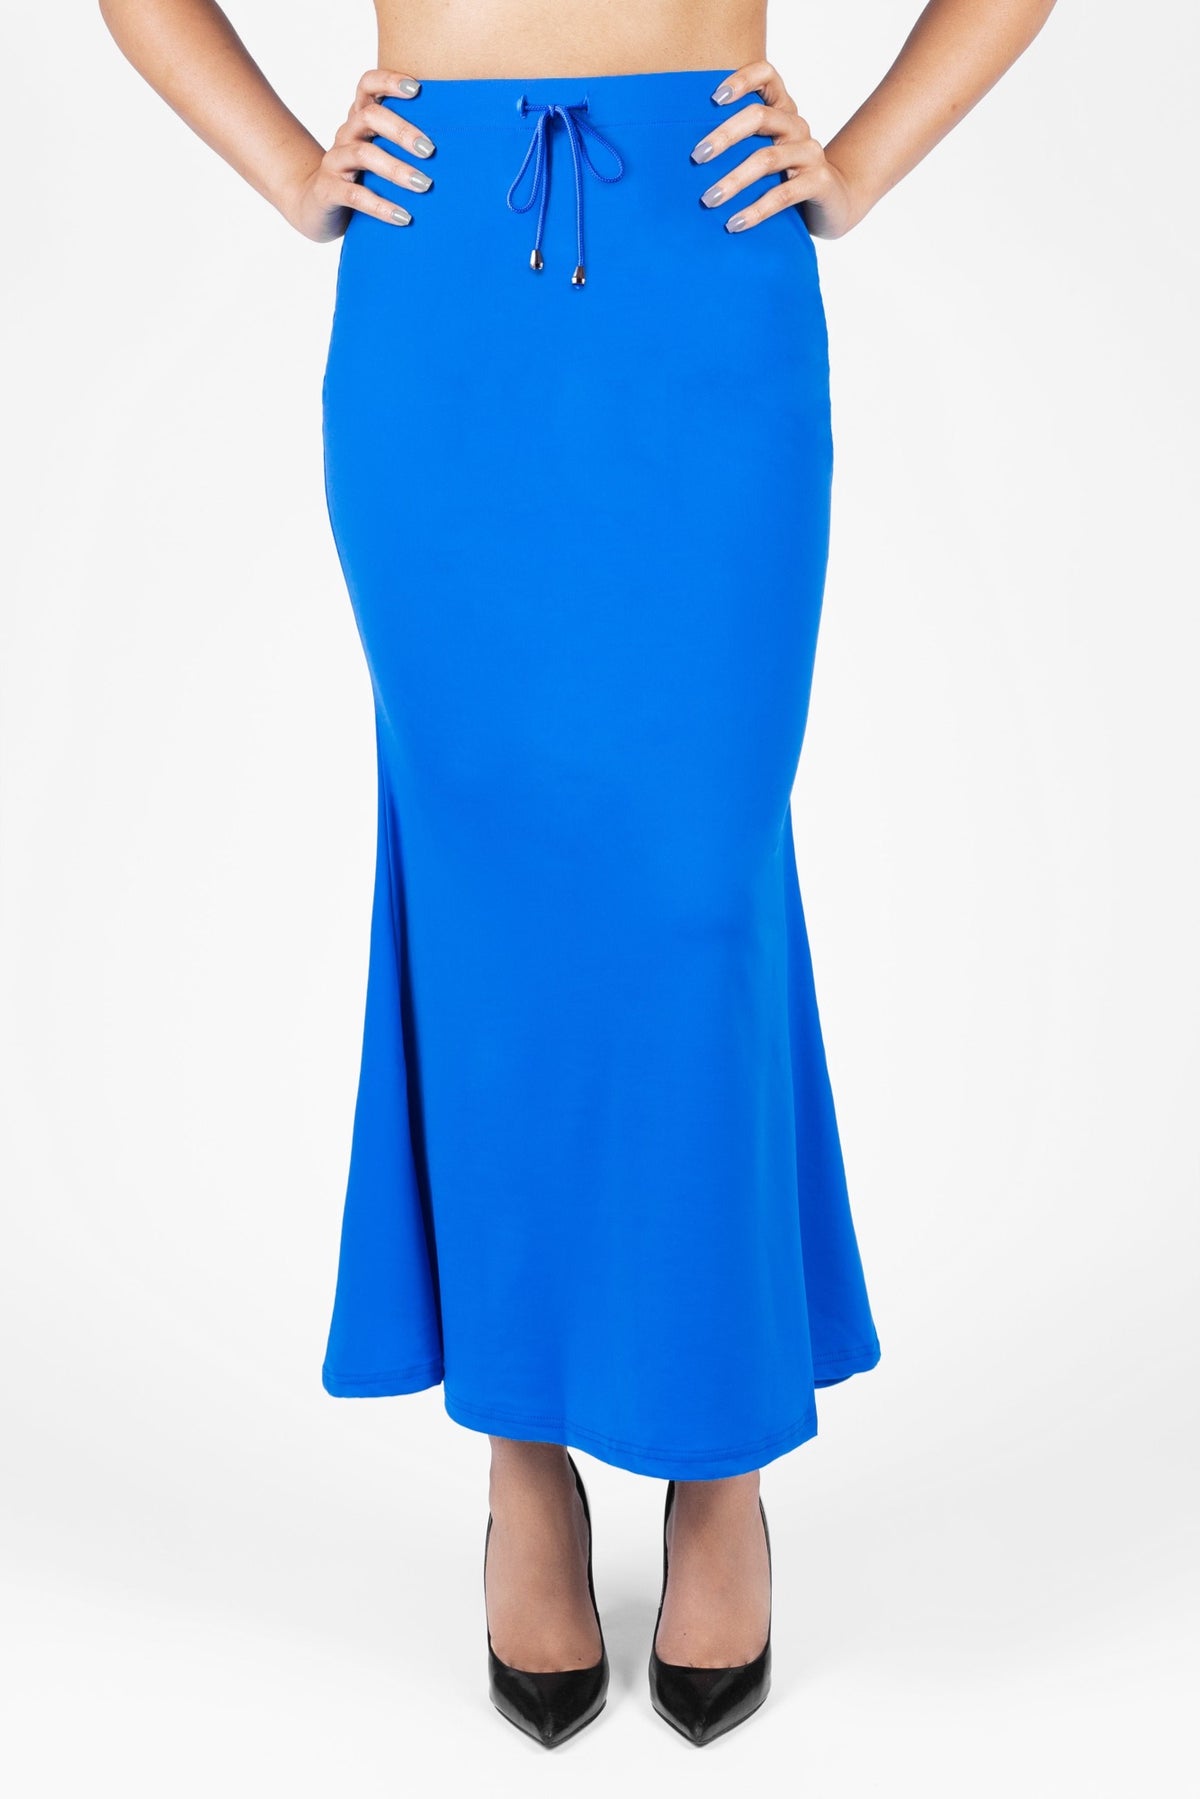 Ladies Blue Shapewear, Navy & Light Blue Shapewear